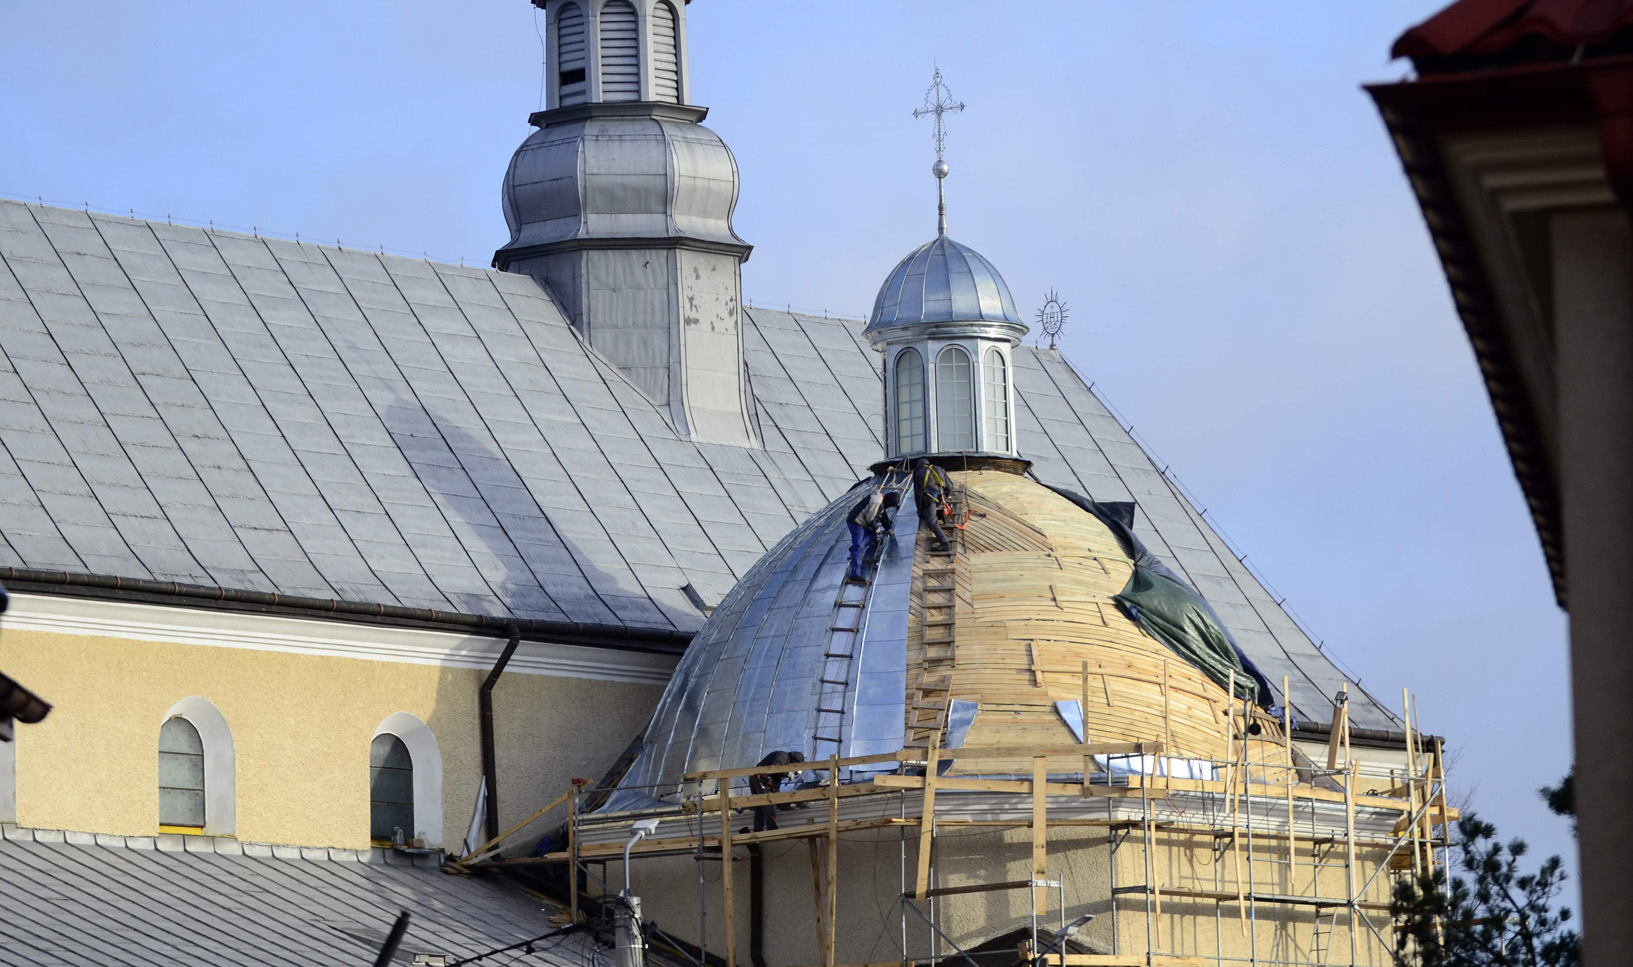 Architekci ostrzegają przed zawaleniem wieży kościoła parafialnego w Kolbuszowej - Zdjęcie główne